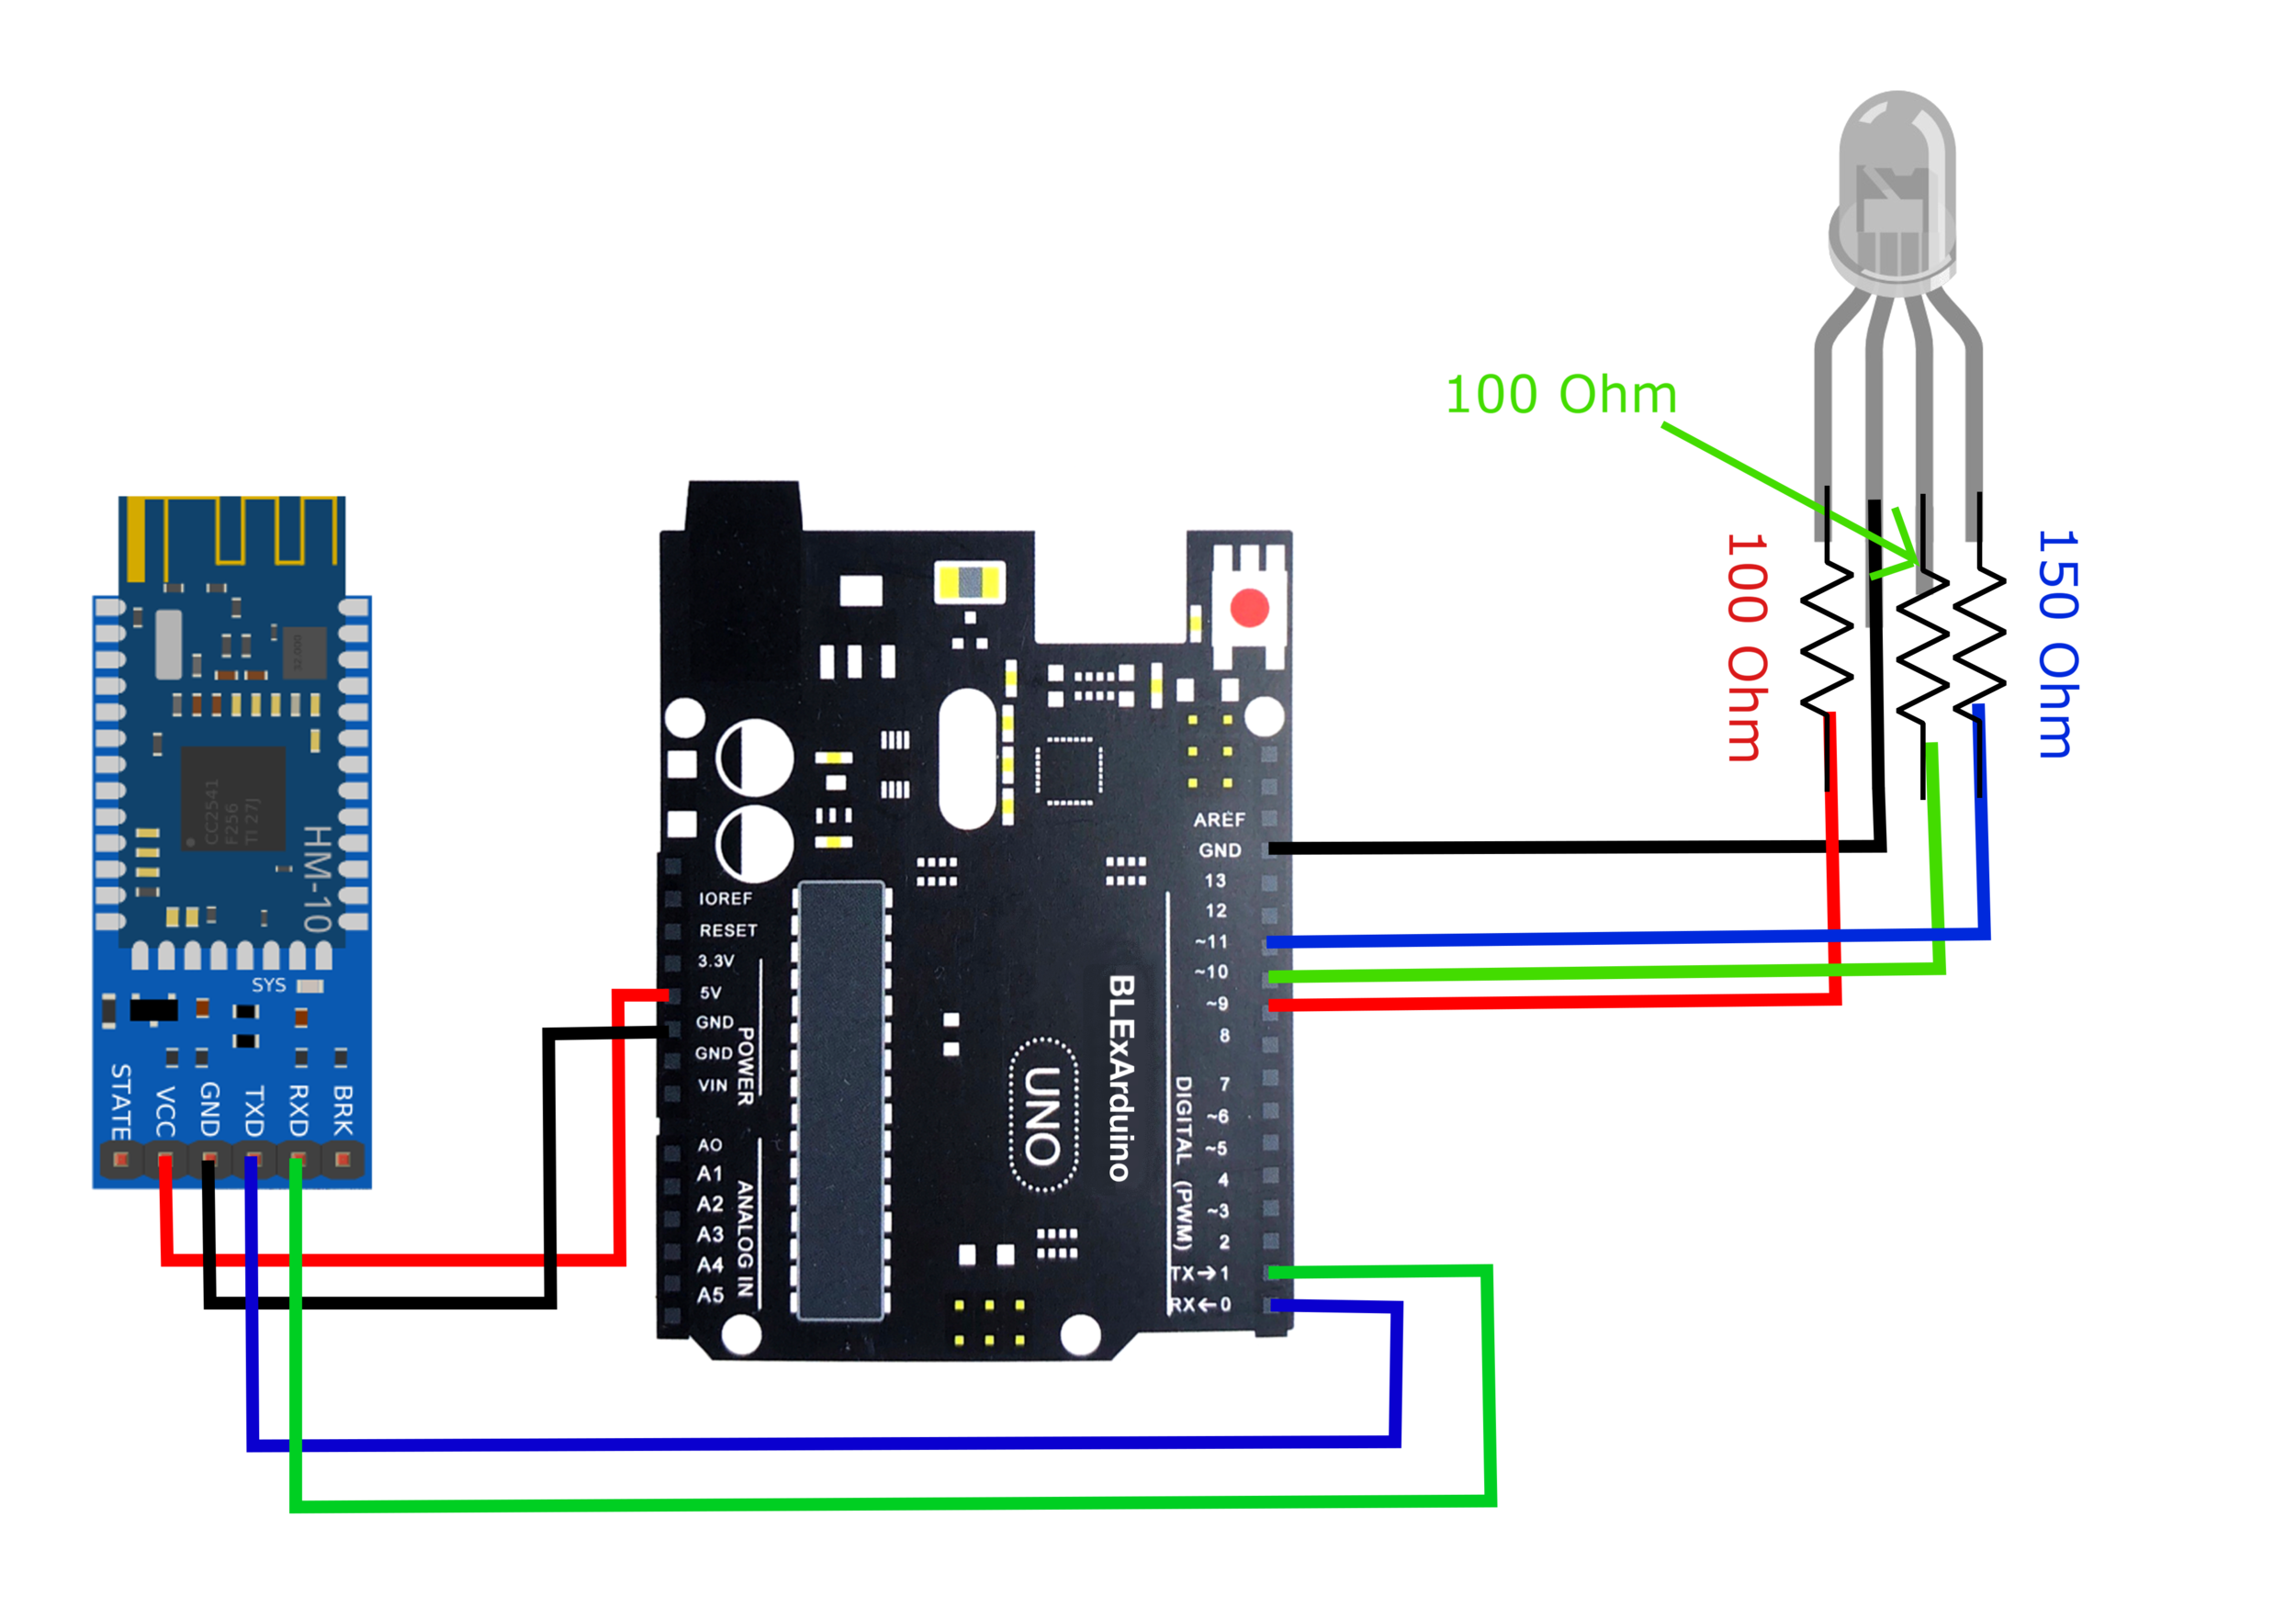 Arduino Uno Bluetooth Wiring Diagram Wiring Diagram And Schematics